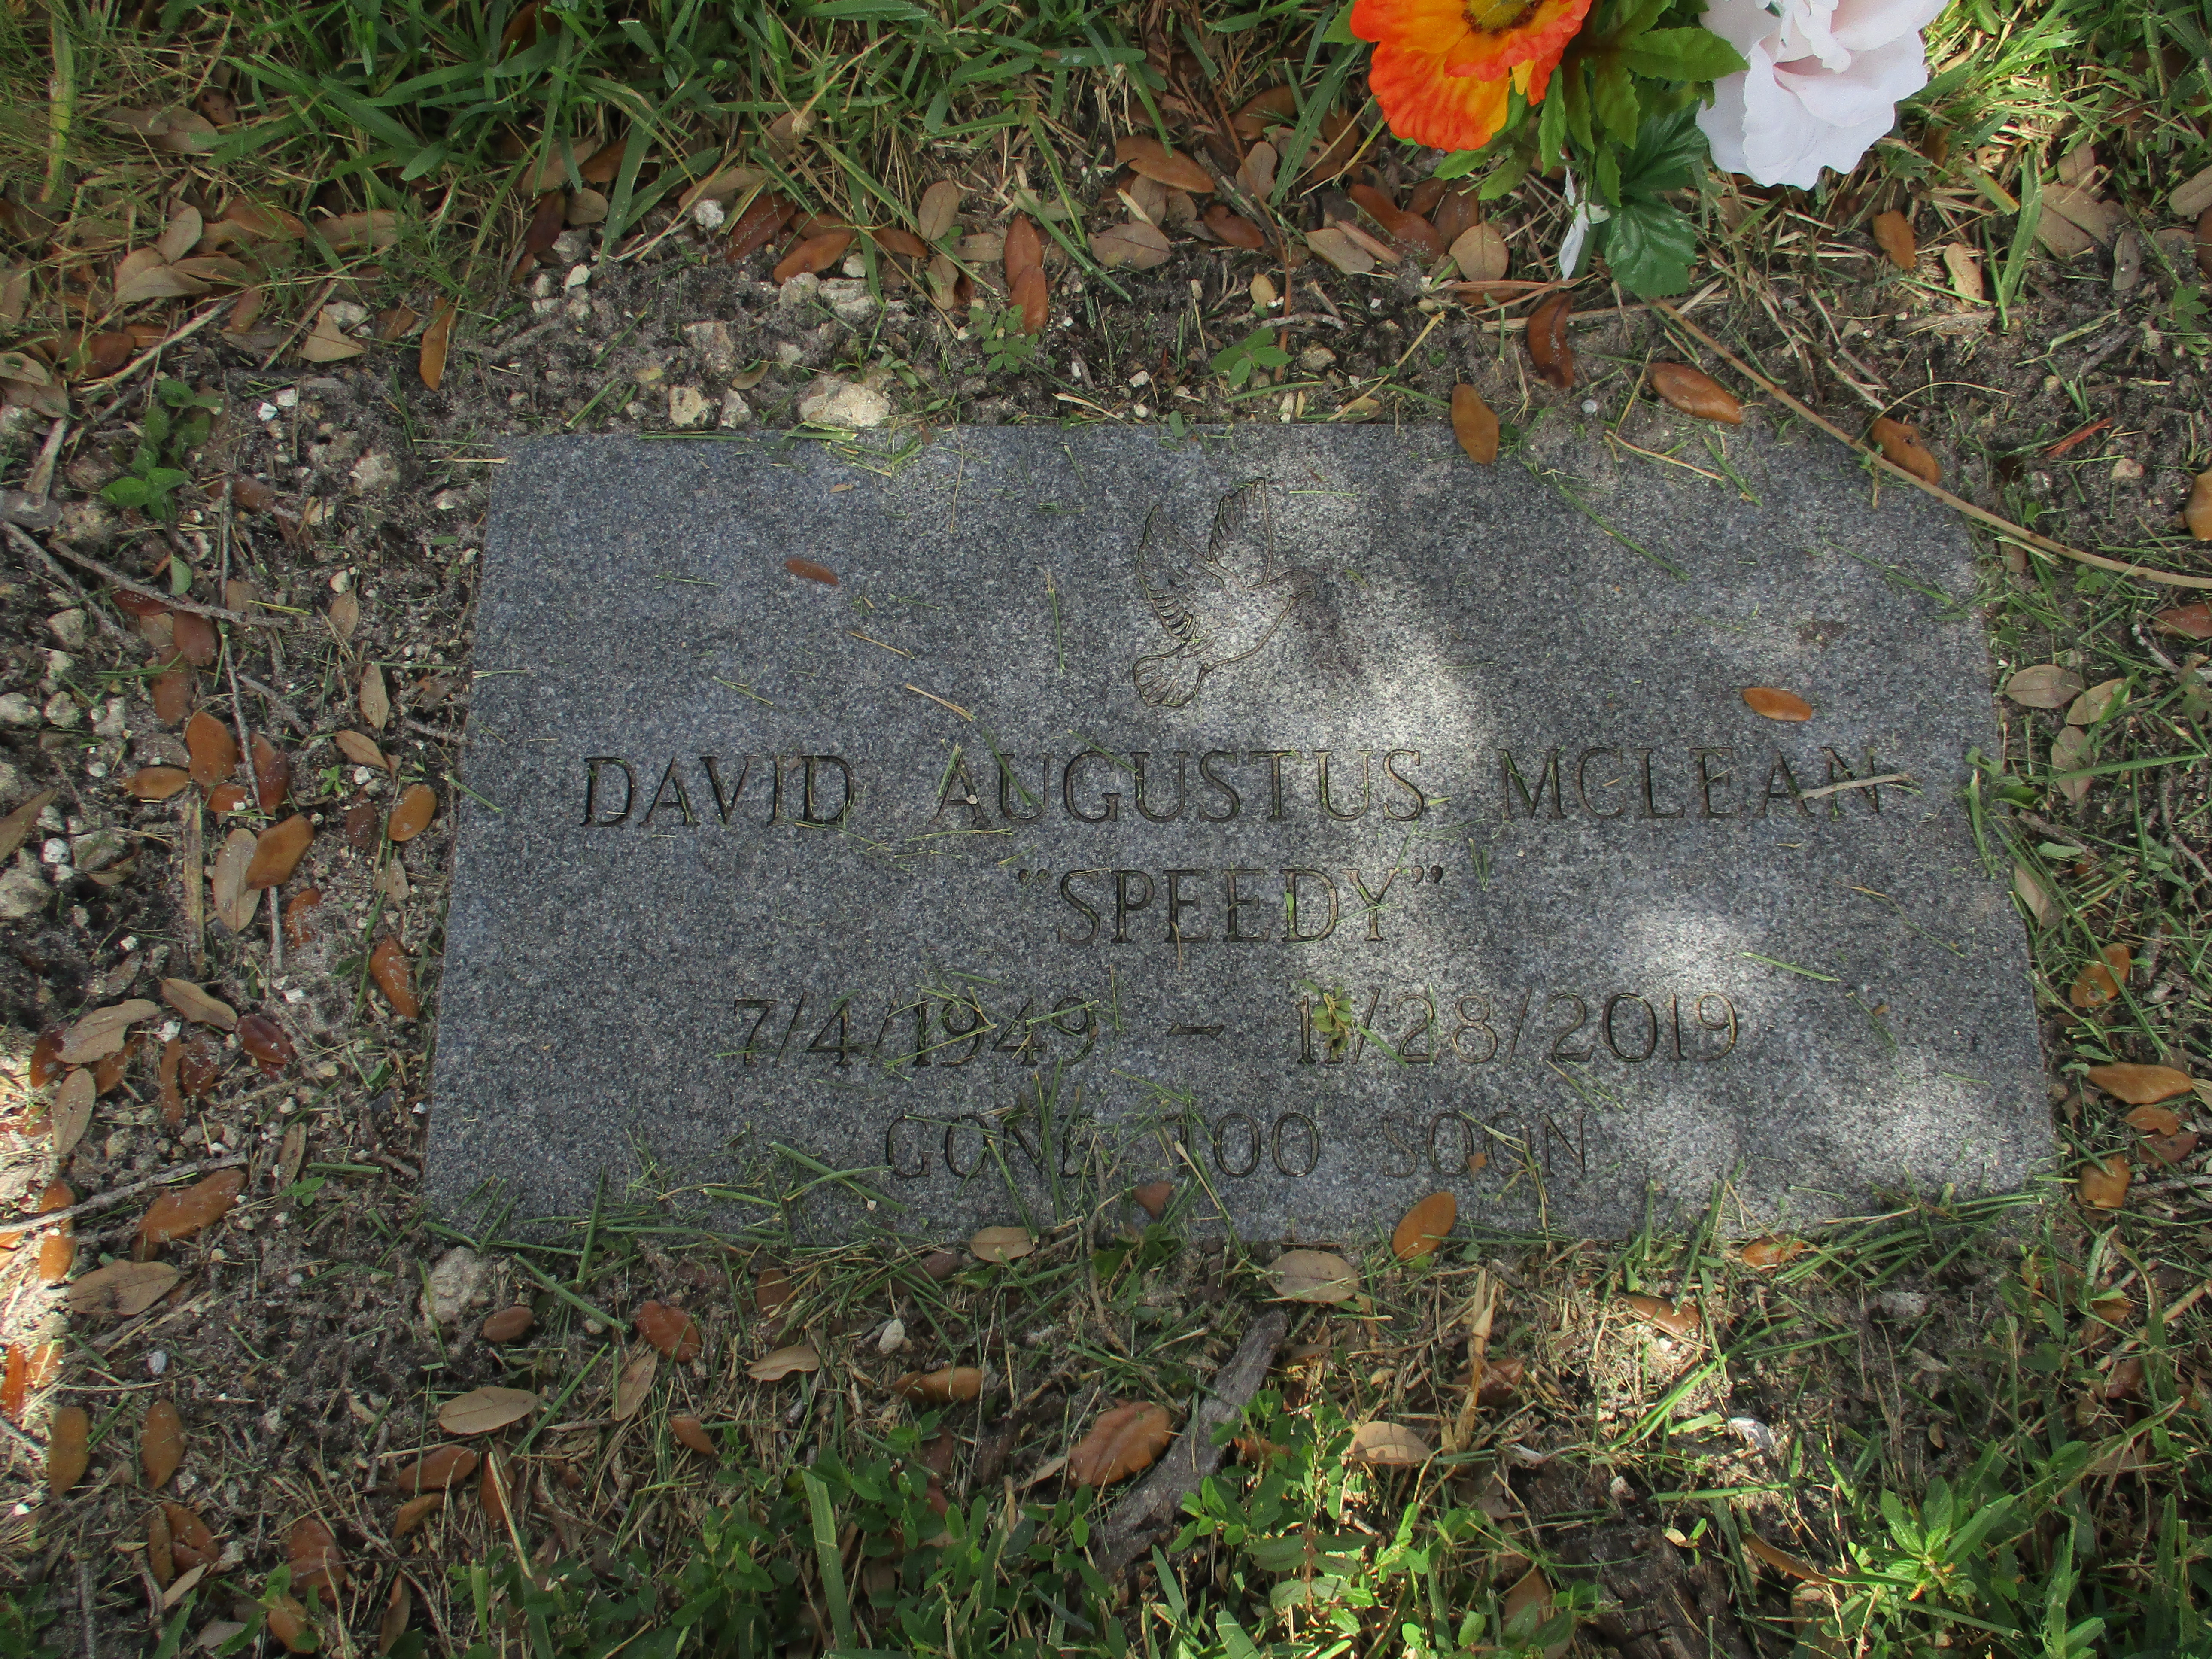 David Augustus "Speedy" McLean